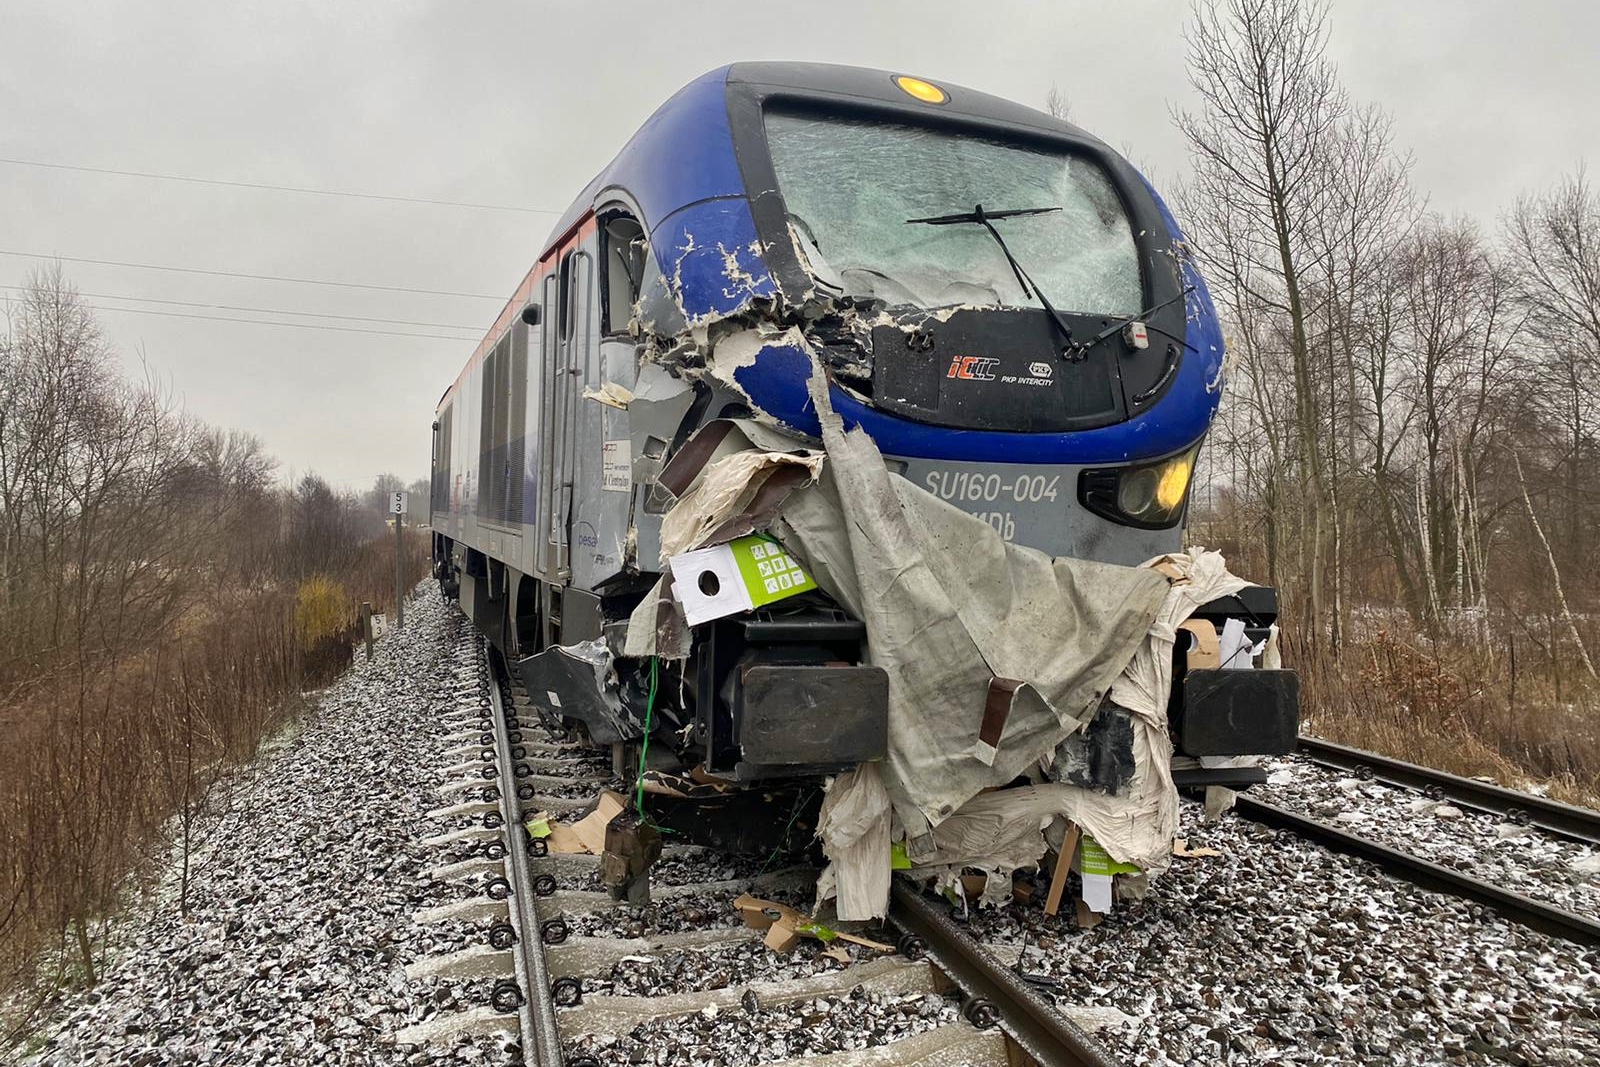 19 stycznia 2022 roku w miejscowości Stok Lacki-Folwark (gm. Siedlce) na niestrzeżonym przejeździe kolejowym doszło do zderzenia pociągu pośpiesznego relacji Białystok-Siedlce z samochodem ciężarowym. 